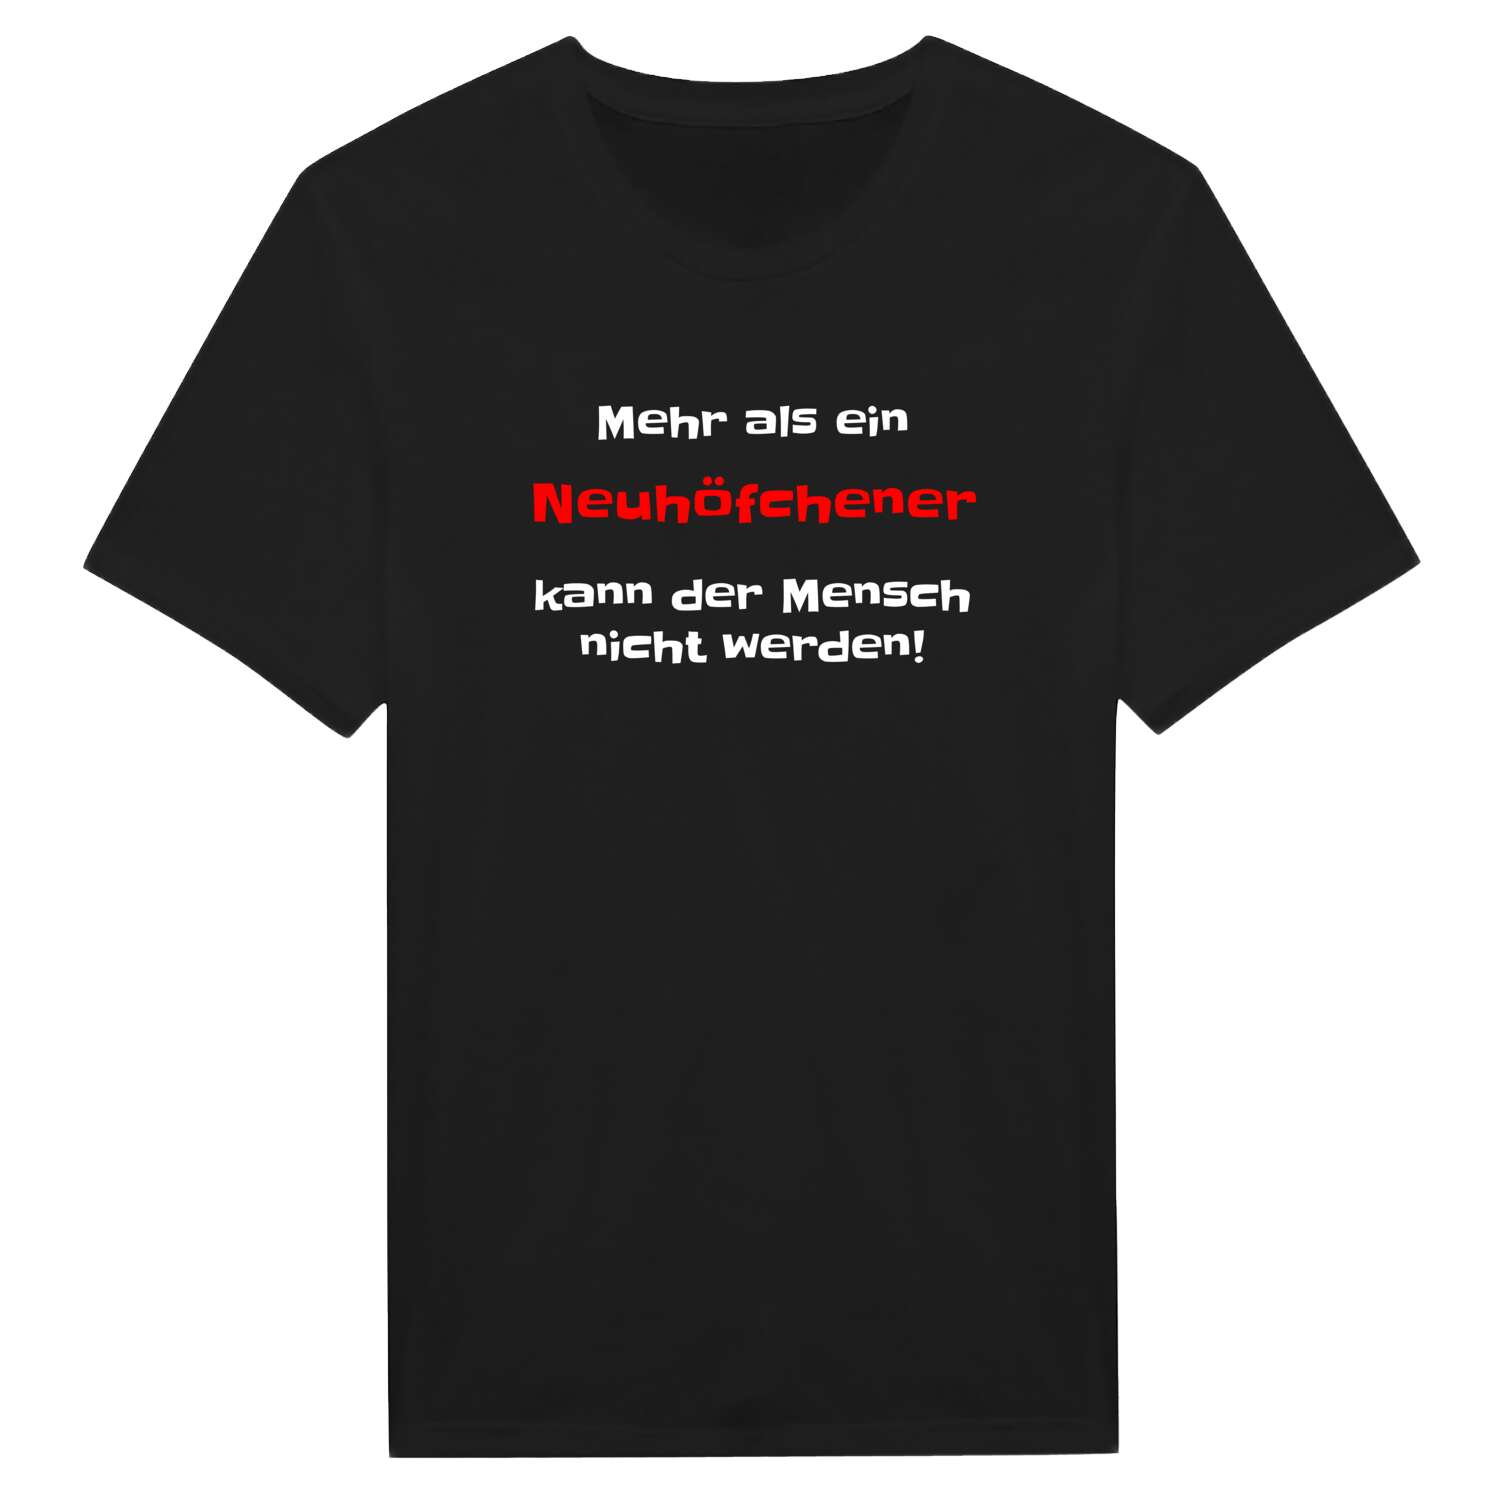 Neuhöfchen T-Shirt »Mehr als ein«